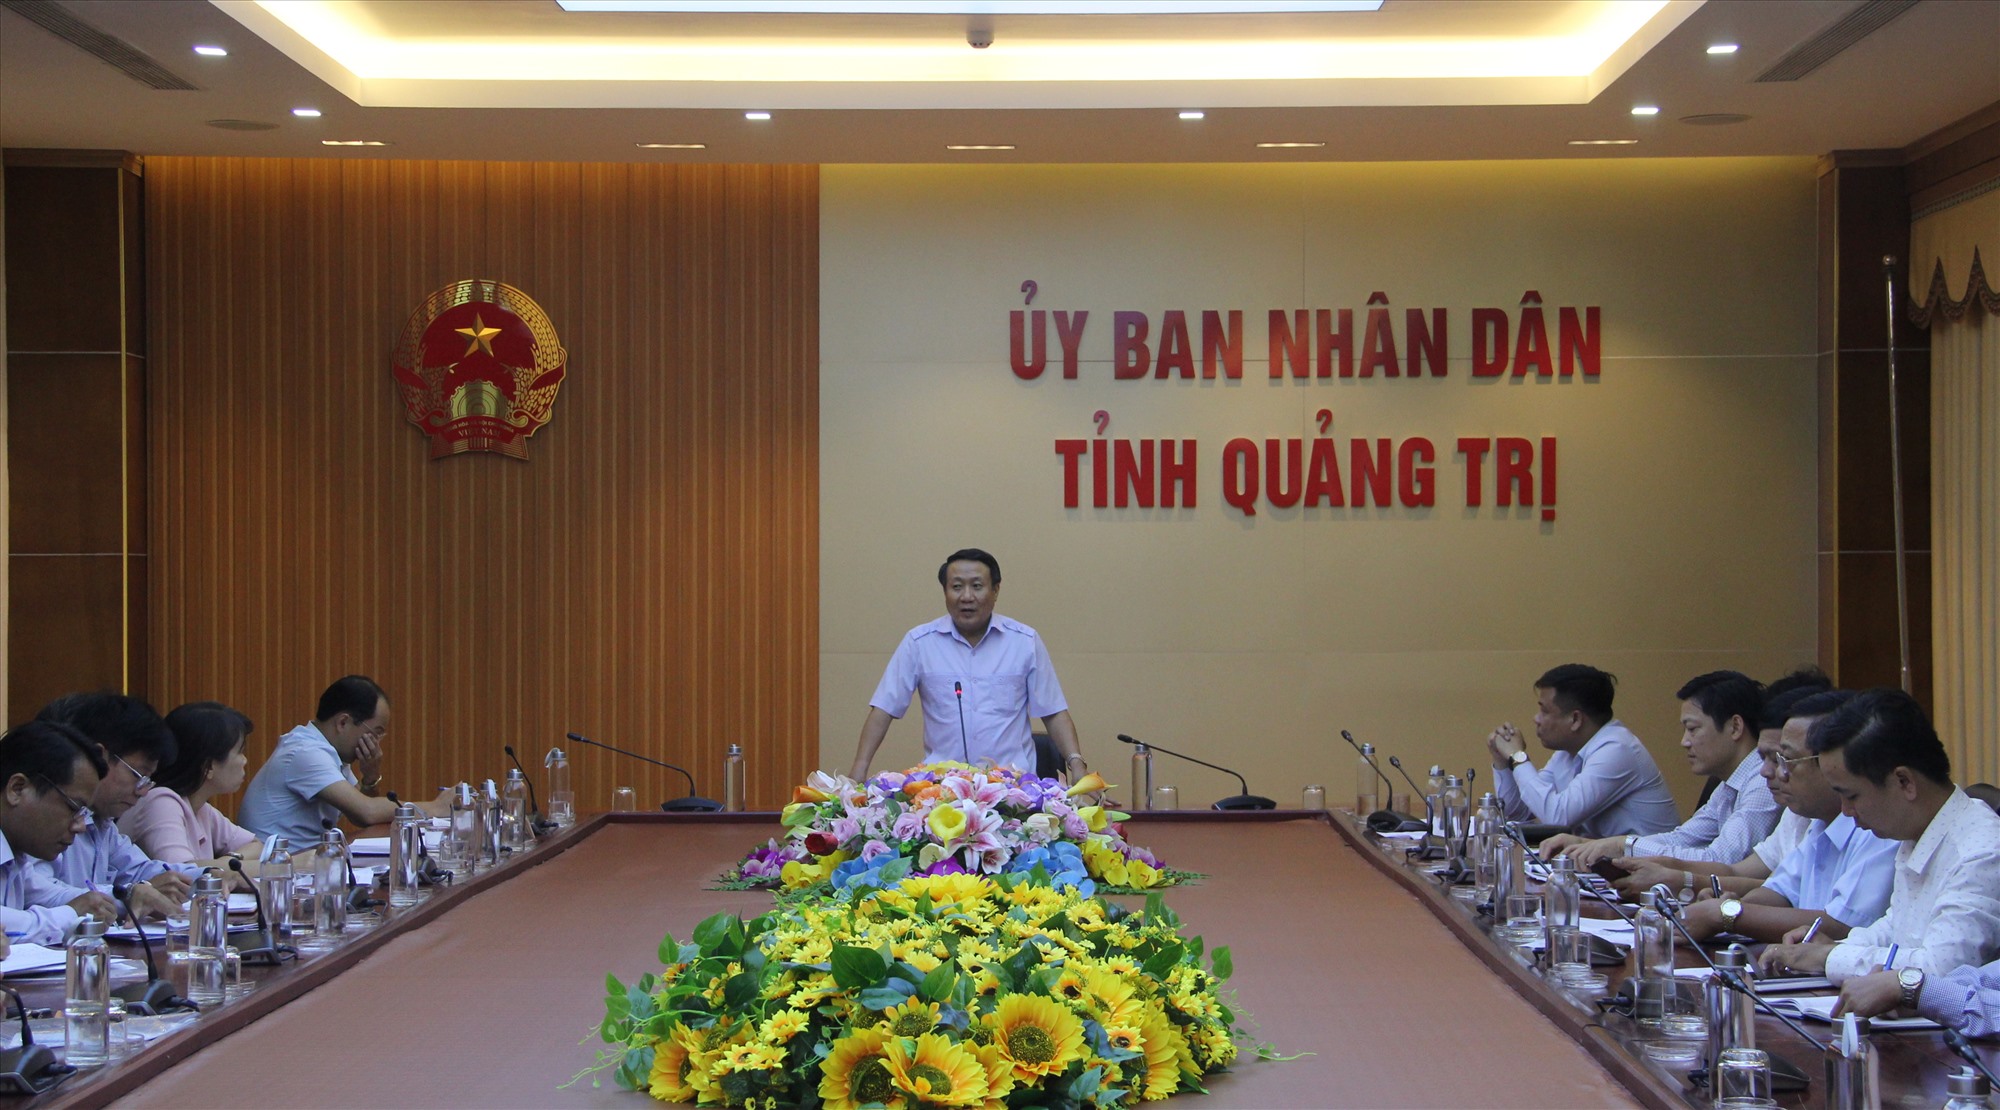 Phó Chủ tịch Thường trực UBND tỉnh Hà Sỹ Đồng kết luận buổi làm việc - Ảnh: MĐ